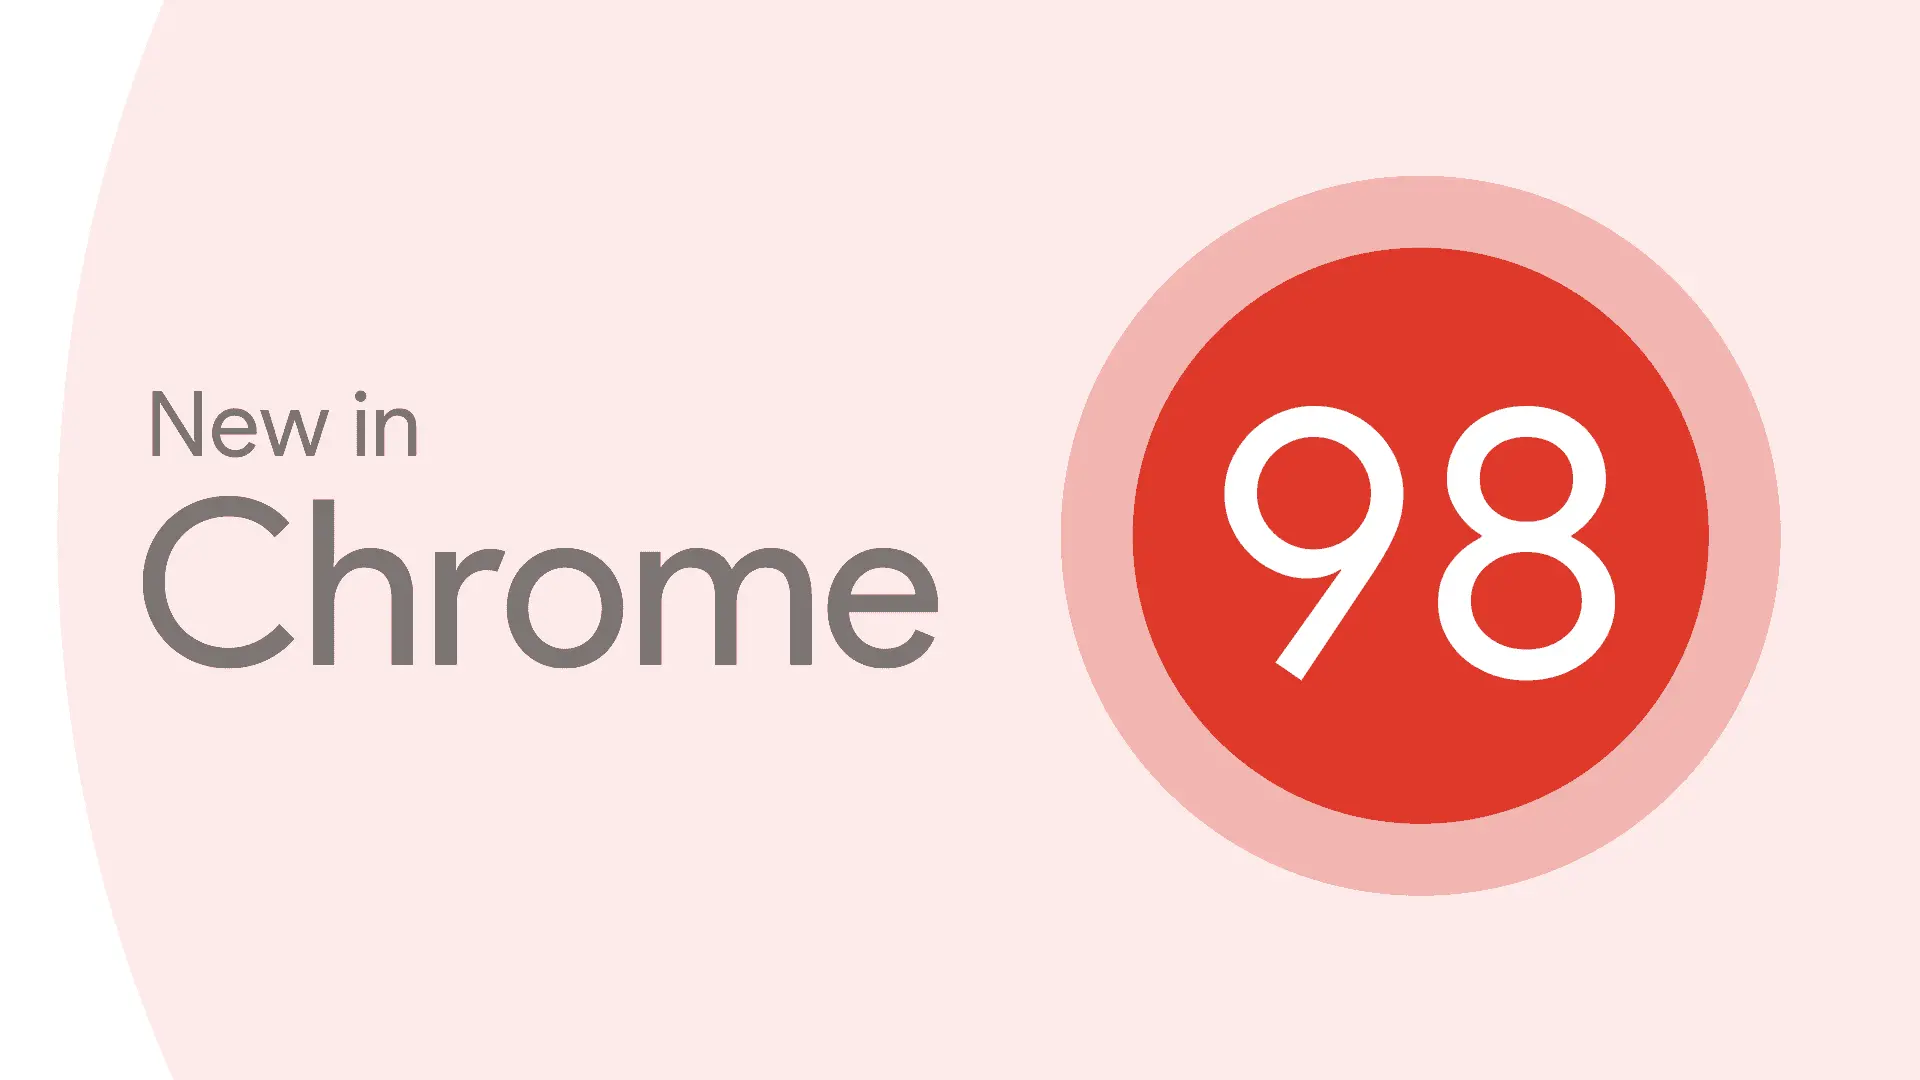 Chrome 98 ya es oficial, estas son todas las novedades